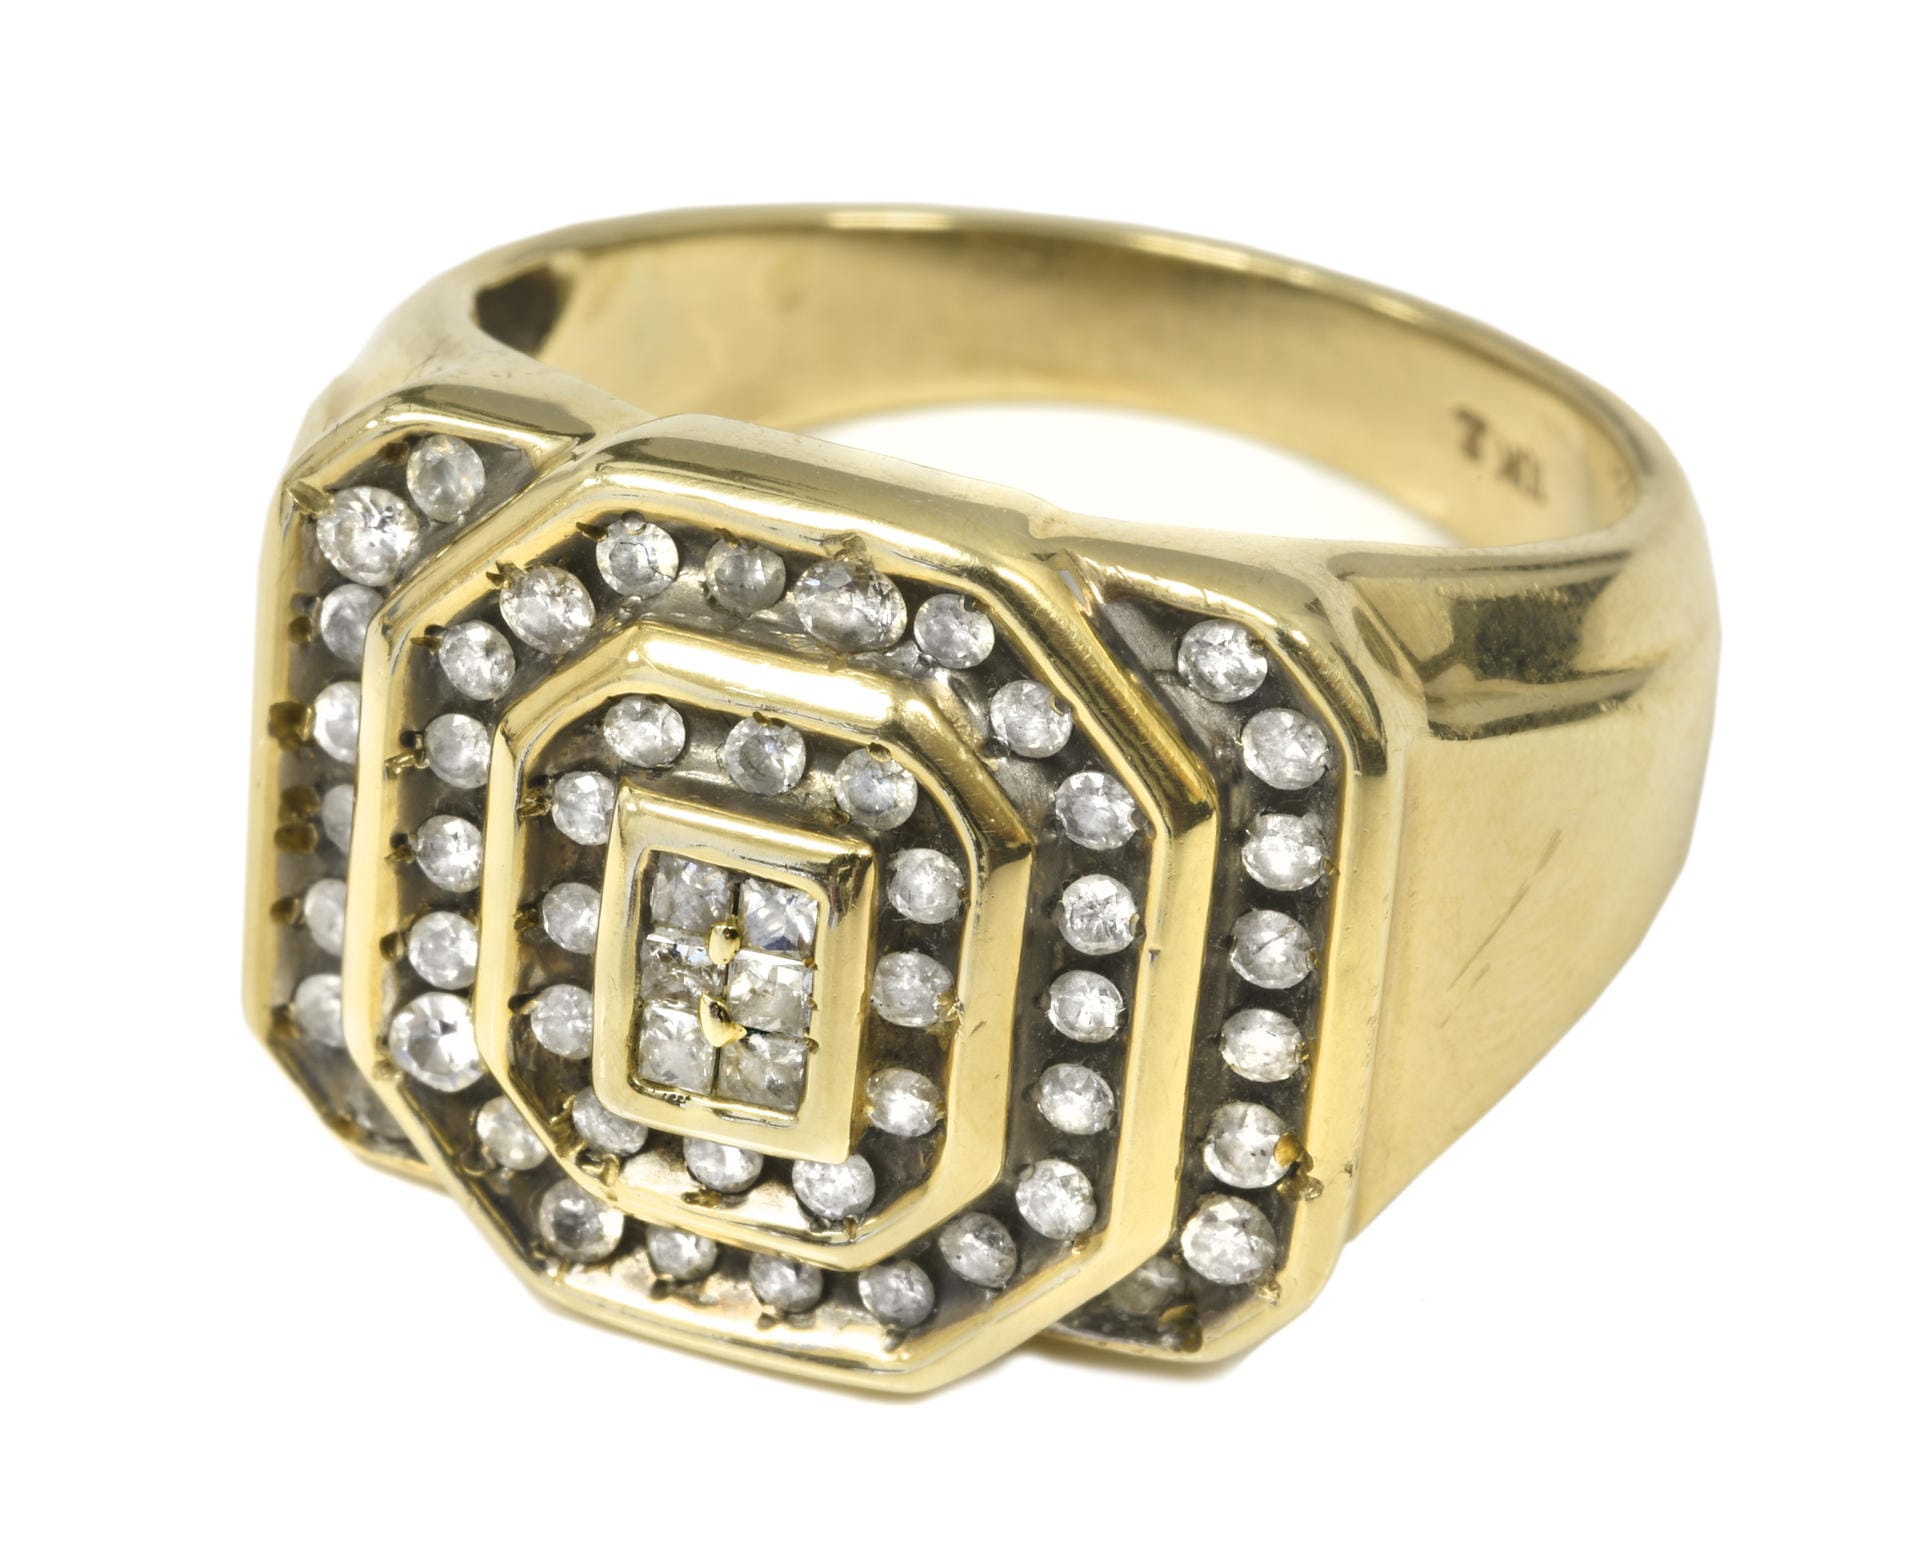 Dieser Ring von Elvis wurde mit 56 Diamanten verziert. 13.750 Dollar erlöste das Schmuckstück aus zehn Karat Gold.